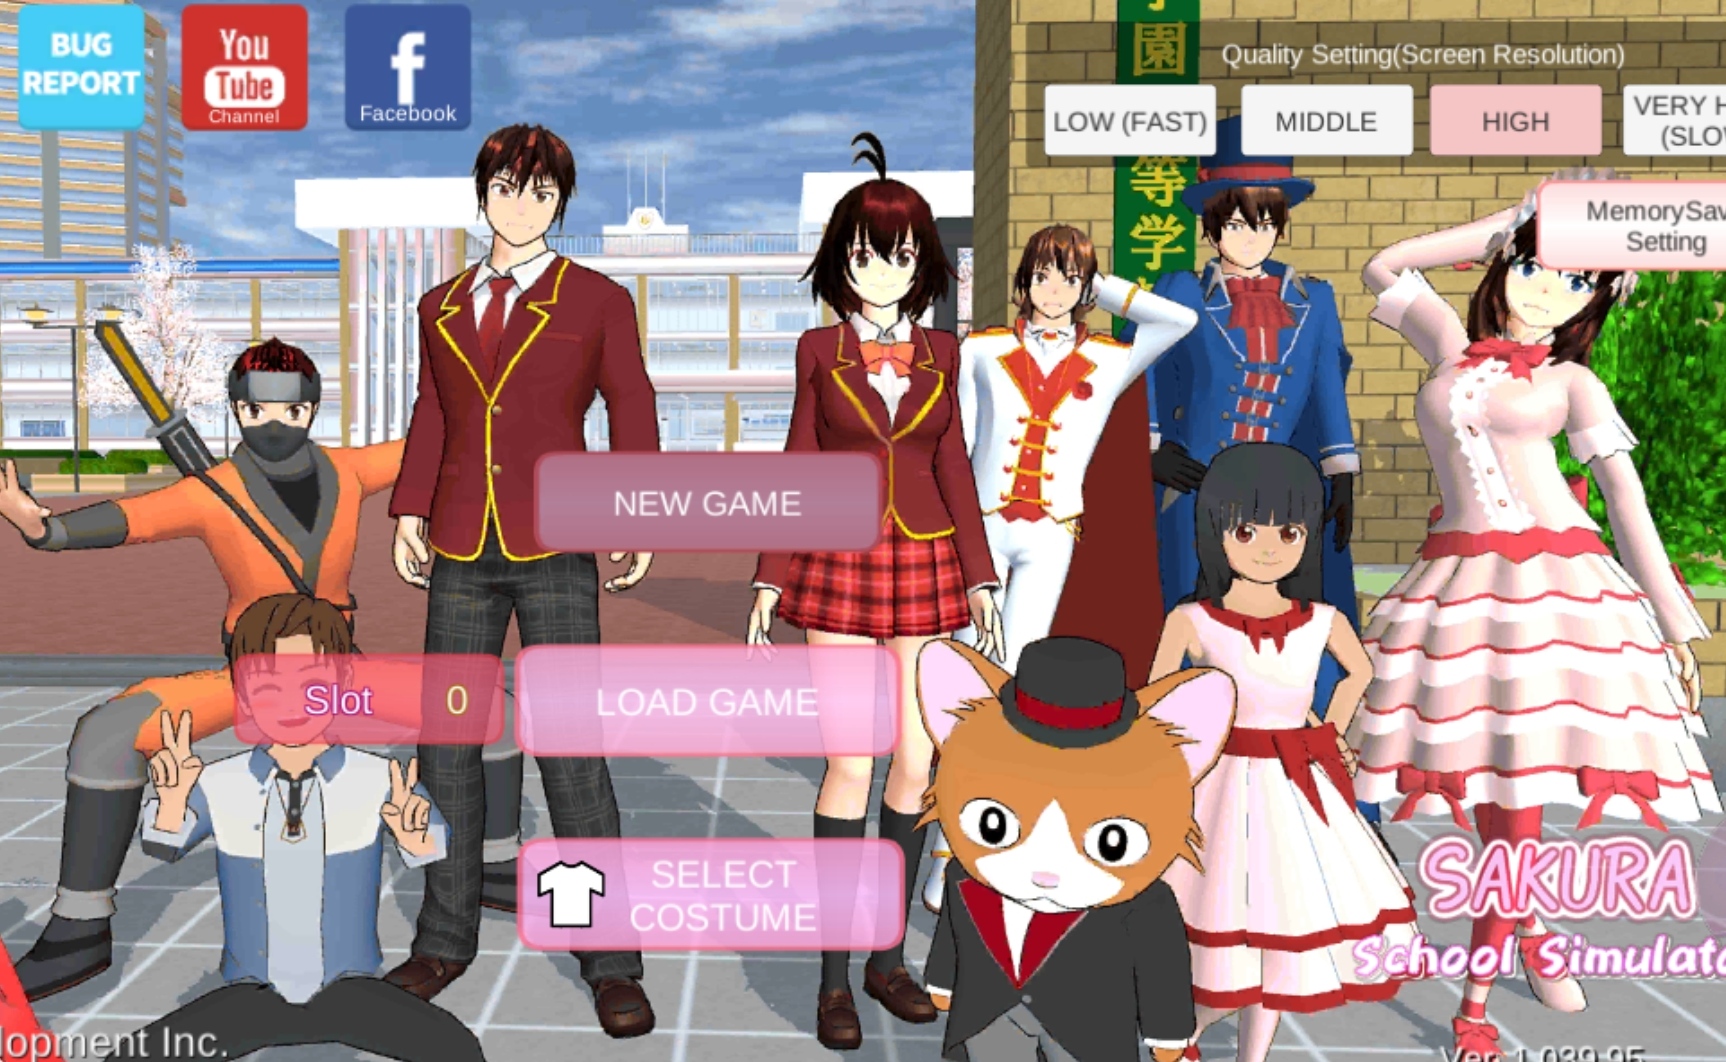 Tampilan Game Sakura School Simulator / Tangkap Layar Aplikasi Game Sakura School Simulator